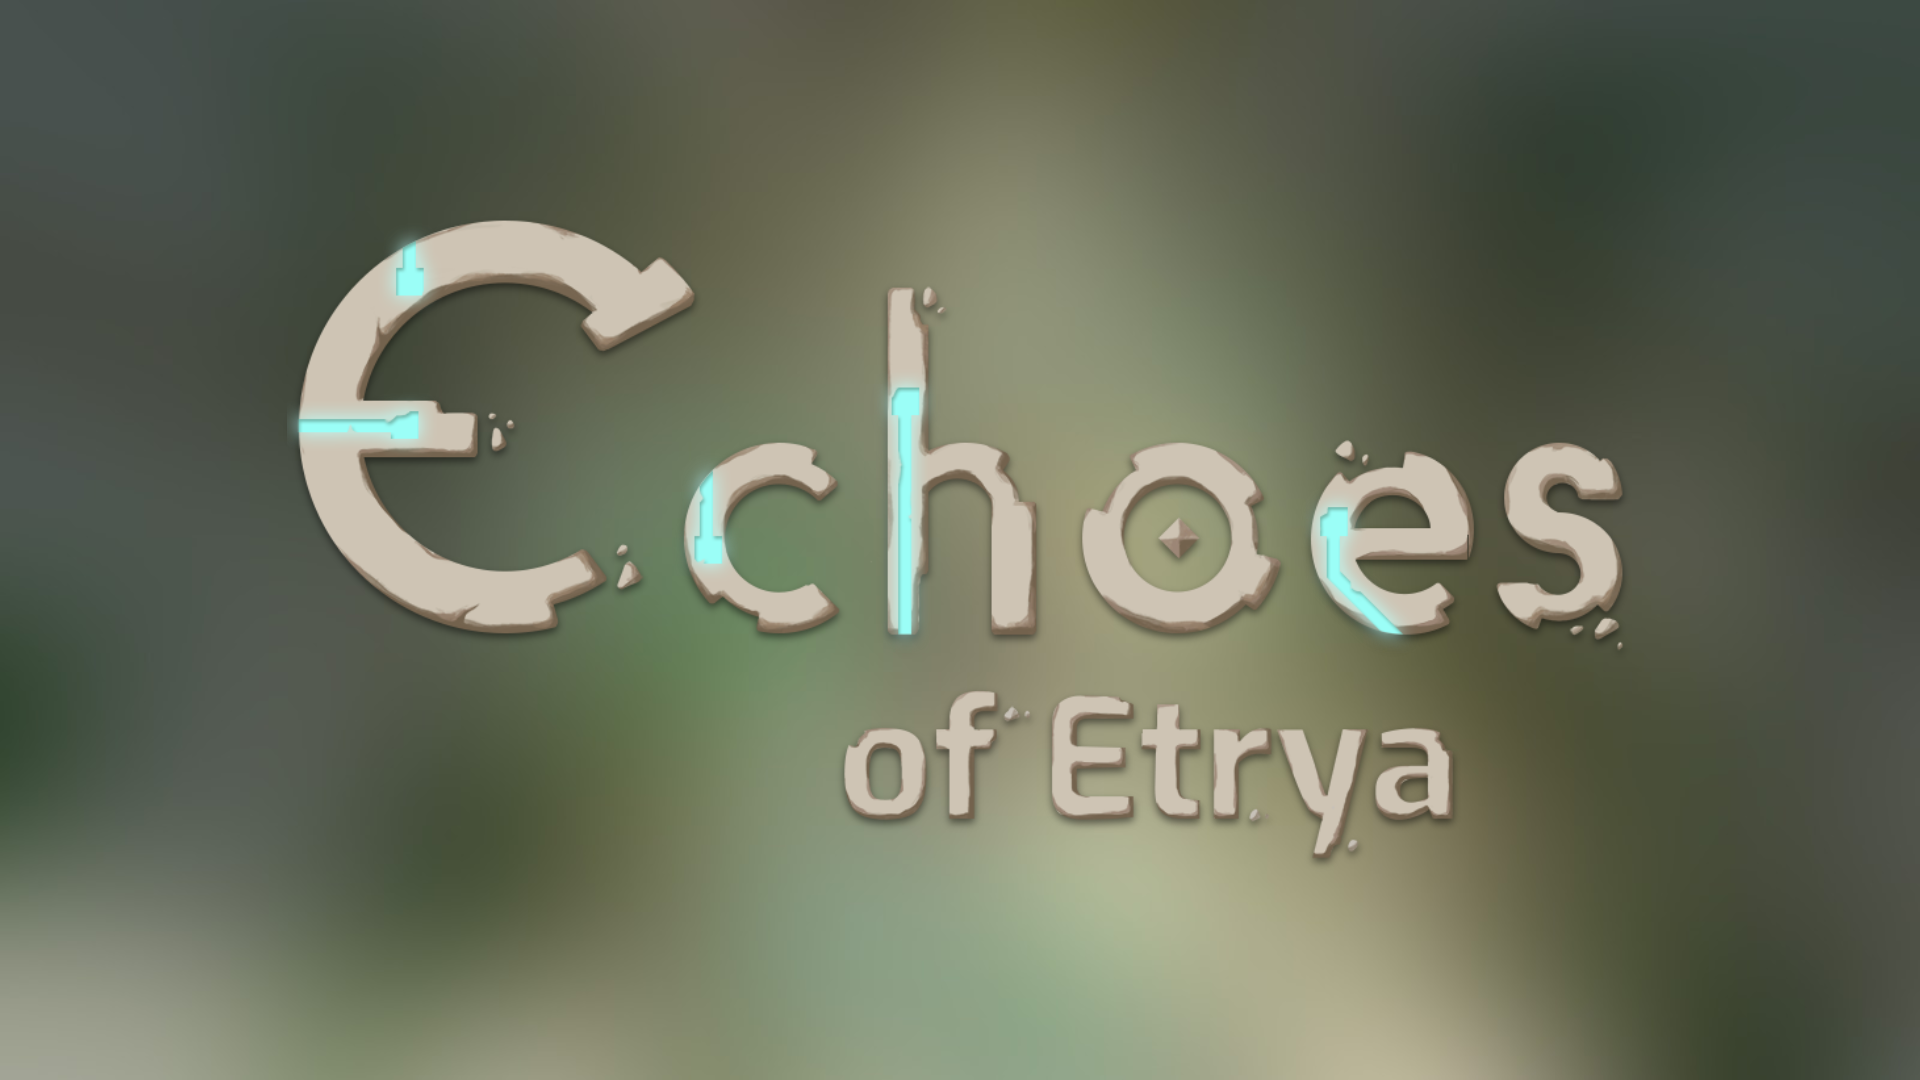 Echoes of Etrya